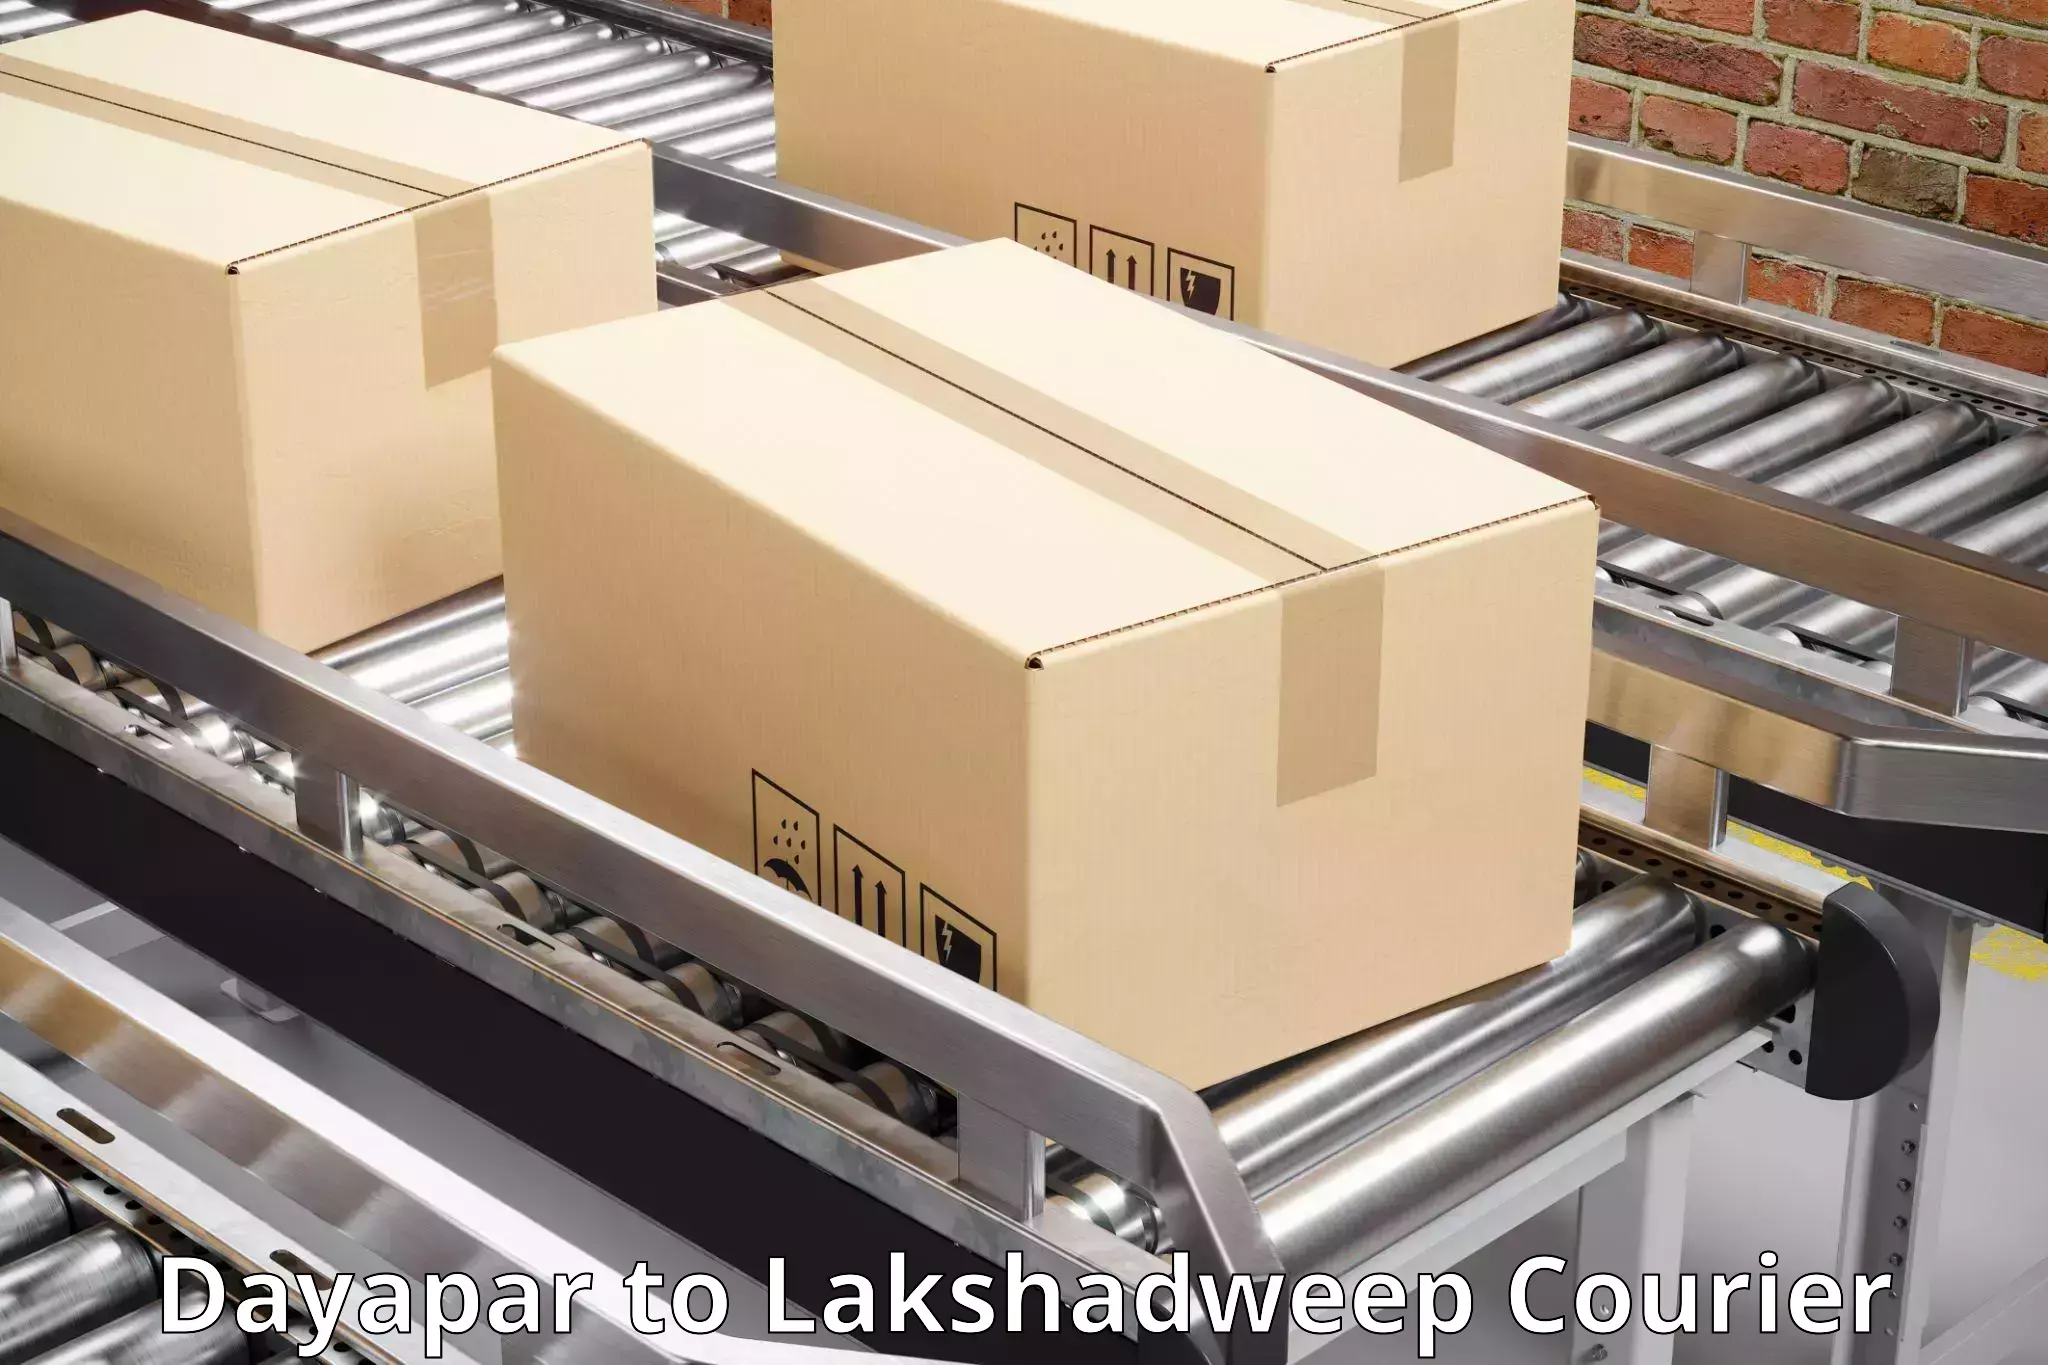 Holiday shipping services Dayapar to Lakshadweep